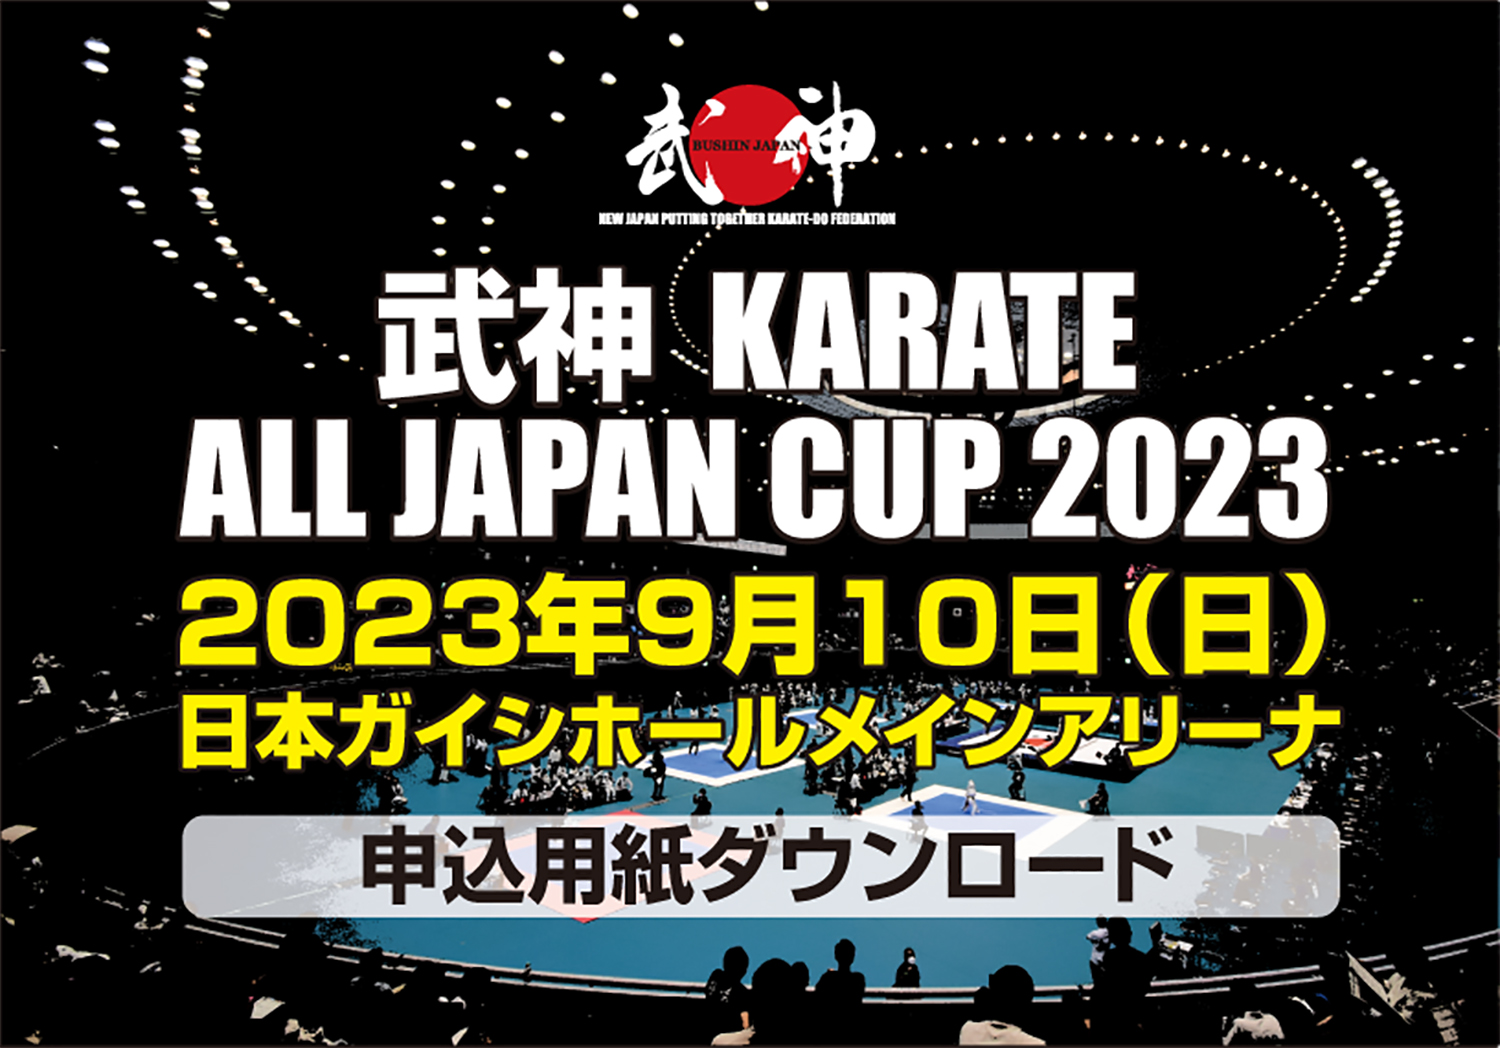 「武神カラテオールジャパンカップ2023」申込用紙ダウンロード